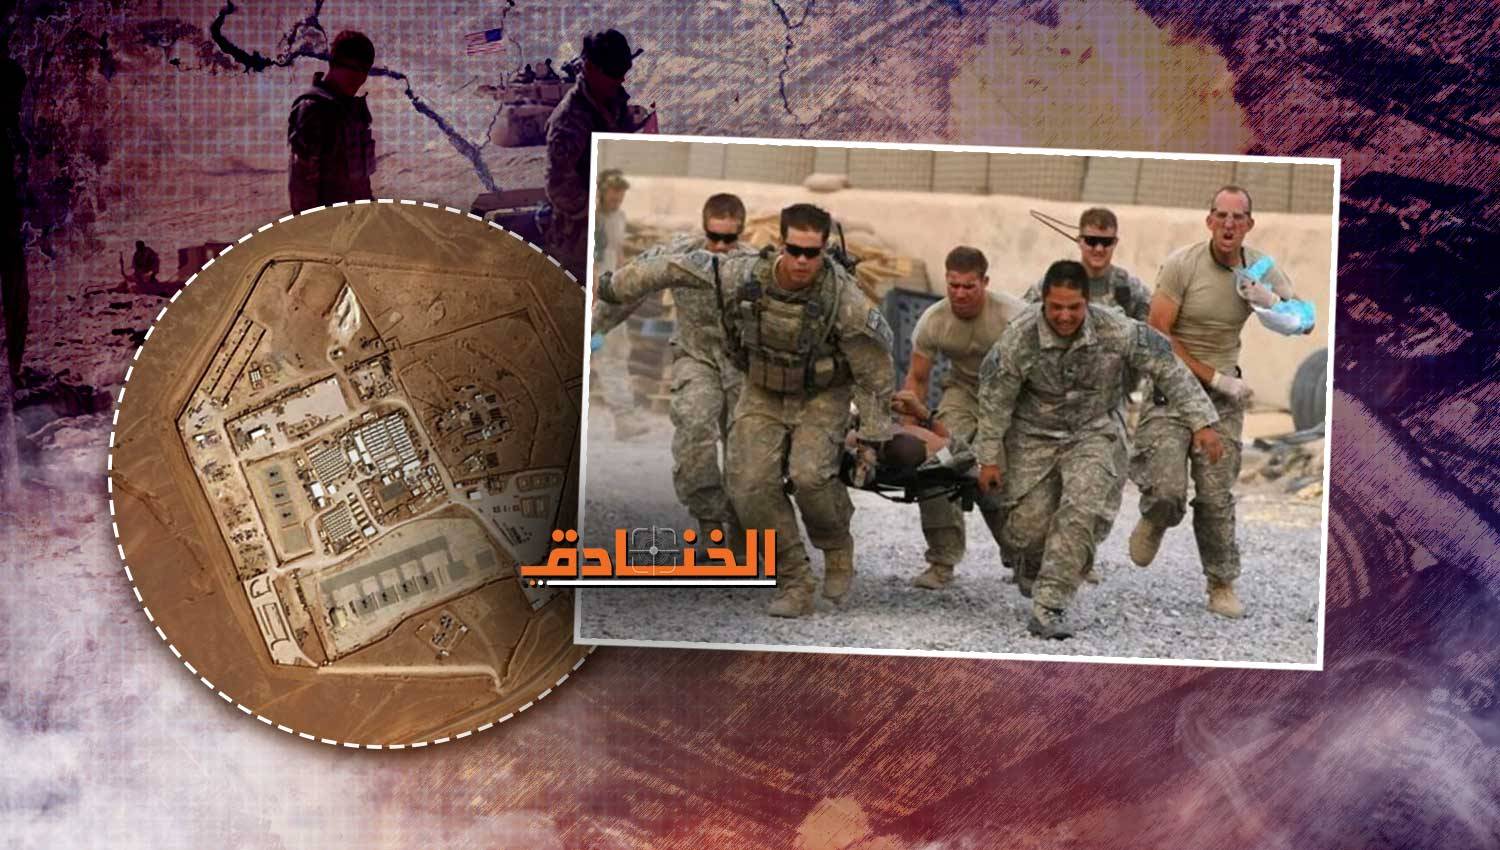 المقاومة العراقية لأمريكا: لا الحدود أو المنظومات العسكرية يمكنها وقف عملياتنا